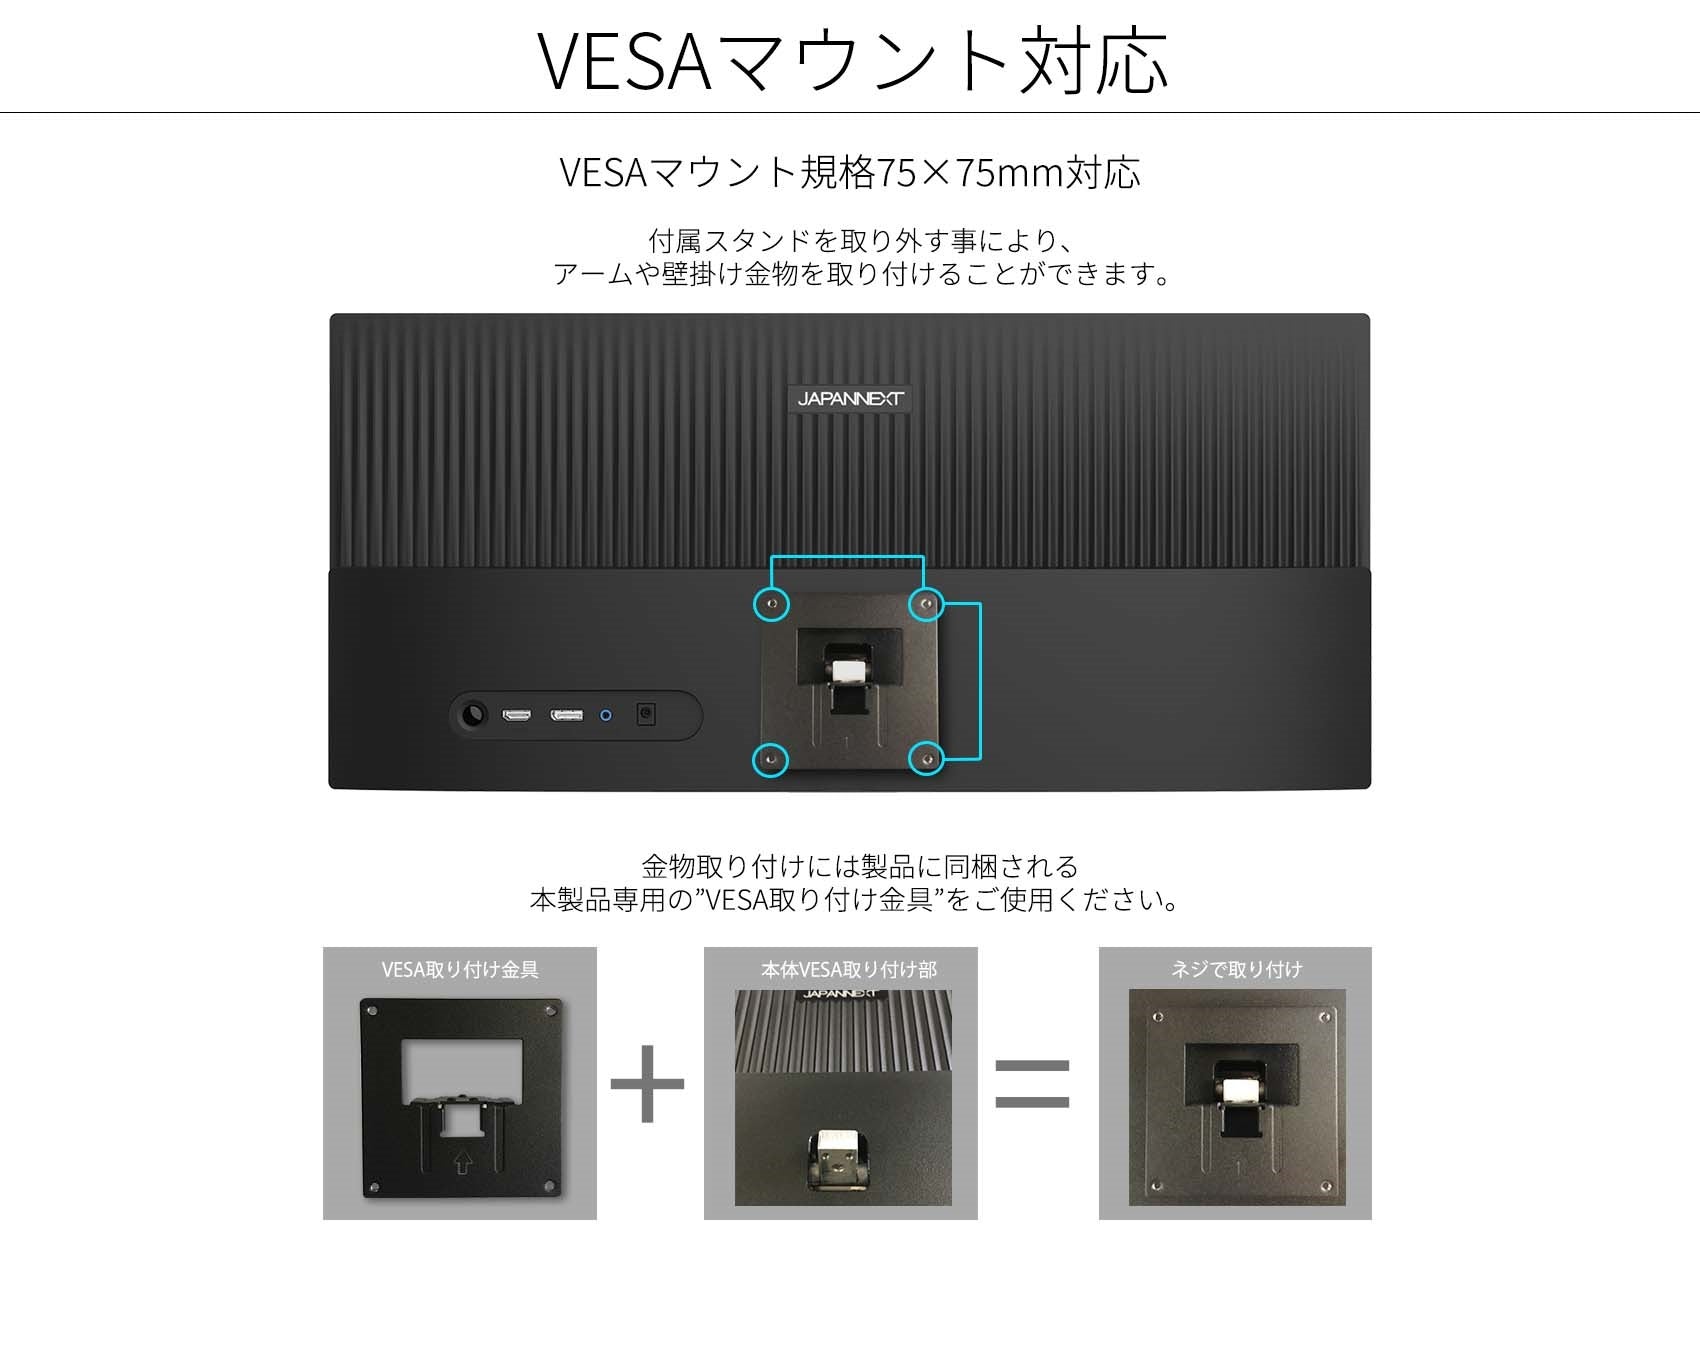 JAPANNEXT 23.3インチ ワイドFHD(2560 x 1080) 液晶モニター JN 